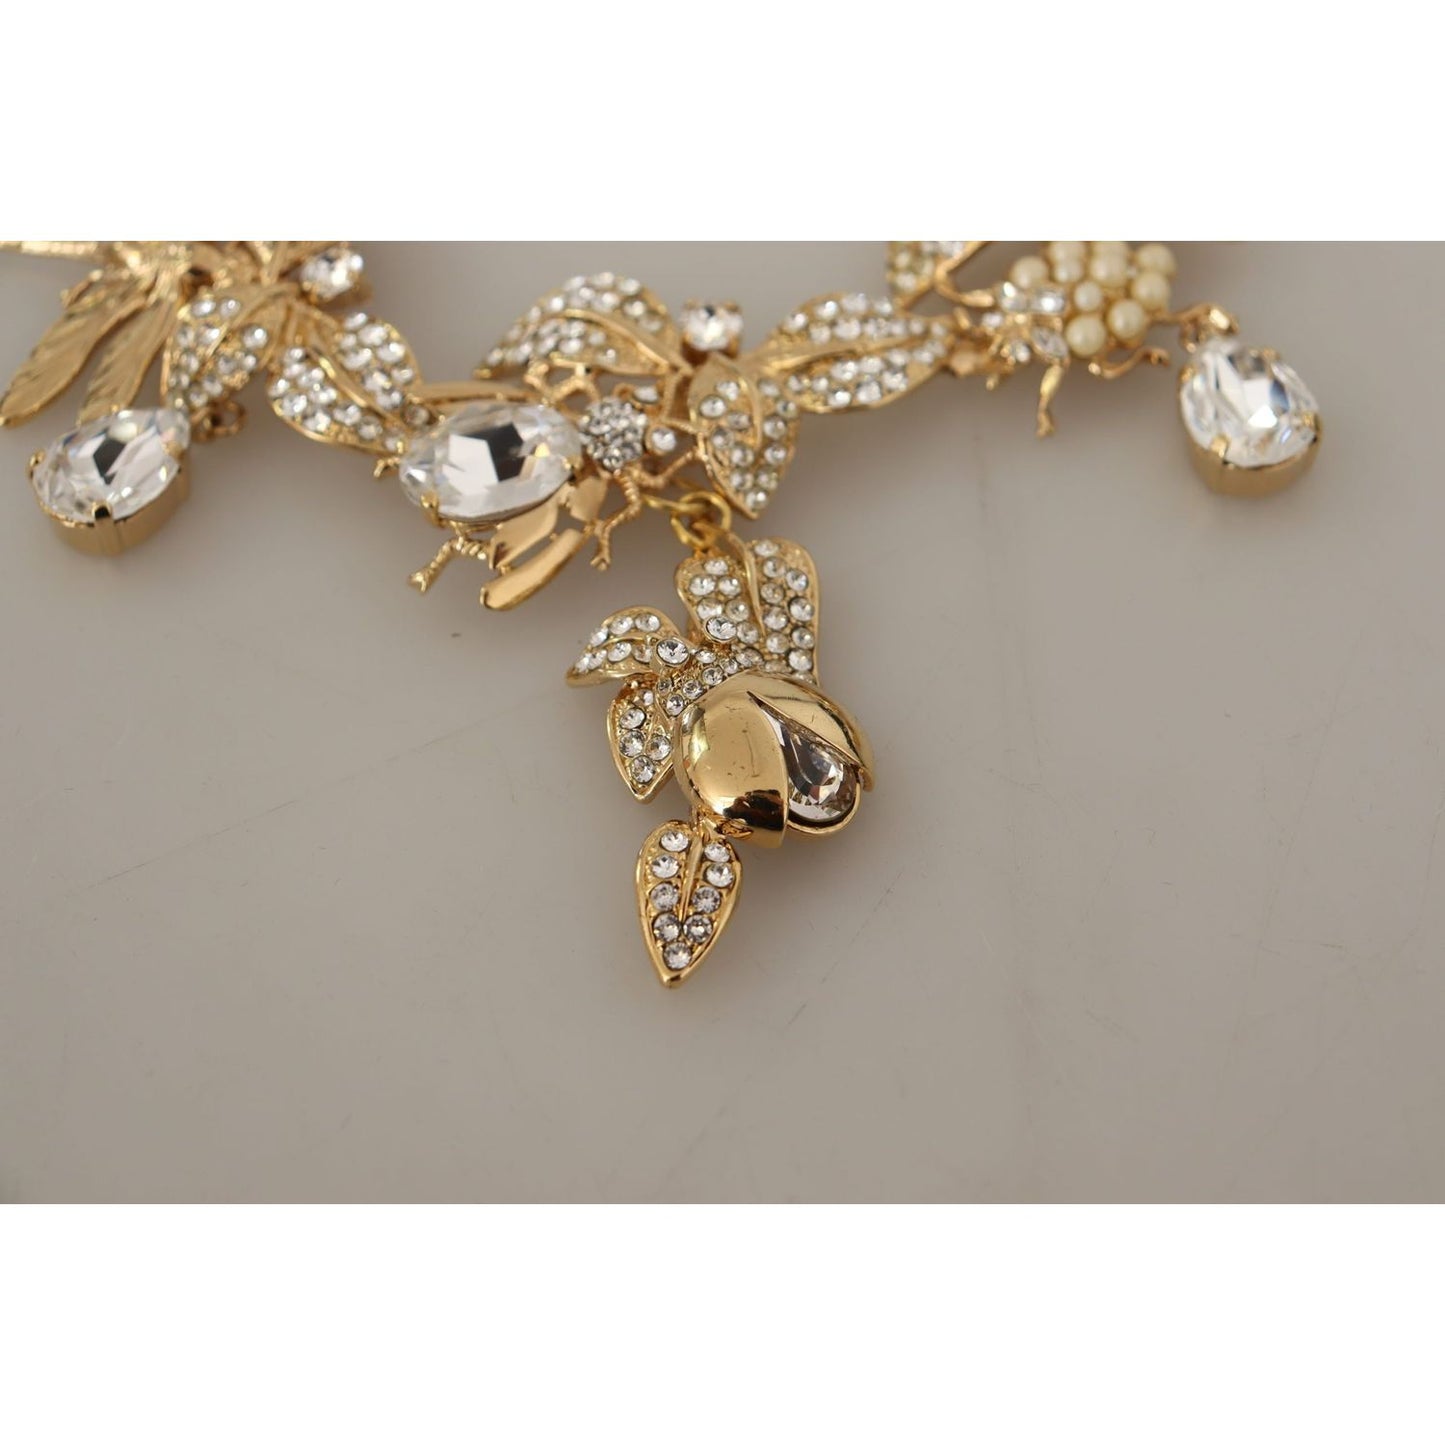 Dolce & Gabbana Elegant Sicily Floral Bug Statement Necklace gold-brass-floral-sicily-crystal-statement-necklace WOMAN NECKLACE IMG_1869-scaled-0d45e4cf-385.jpg